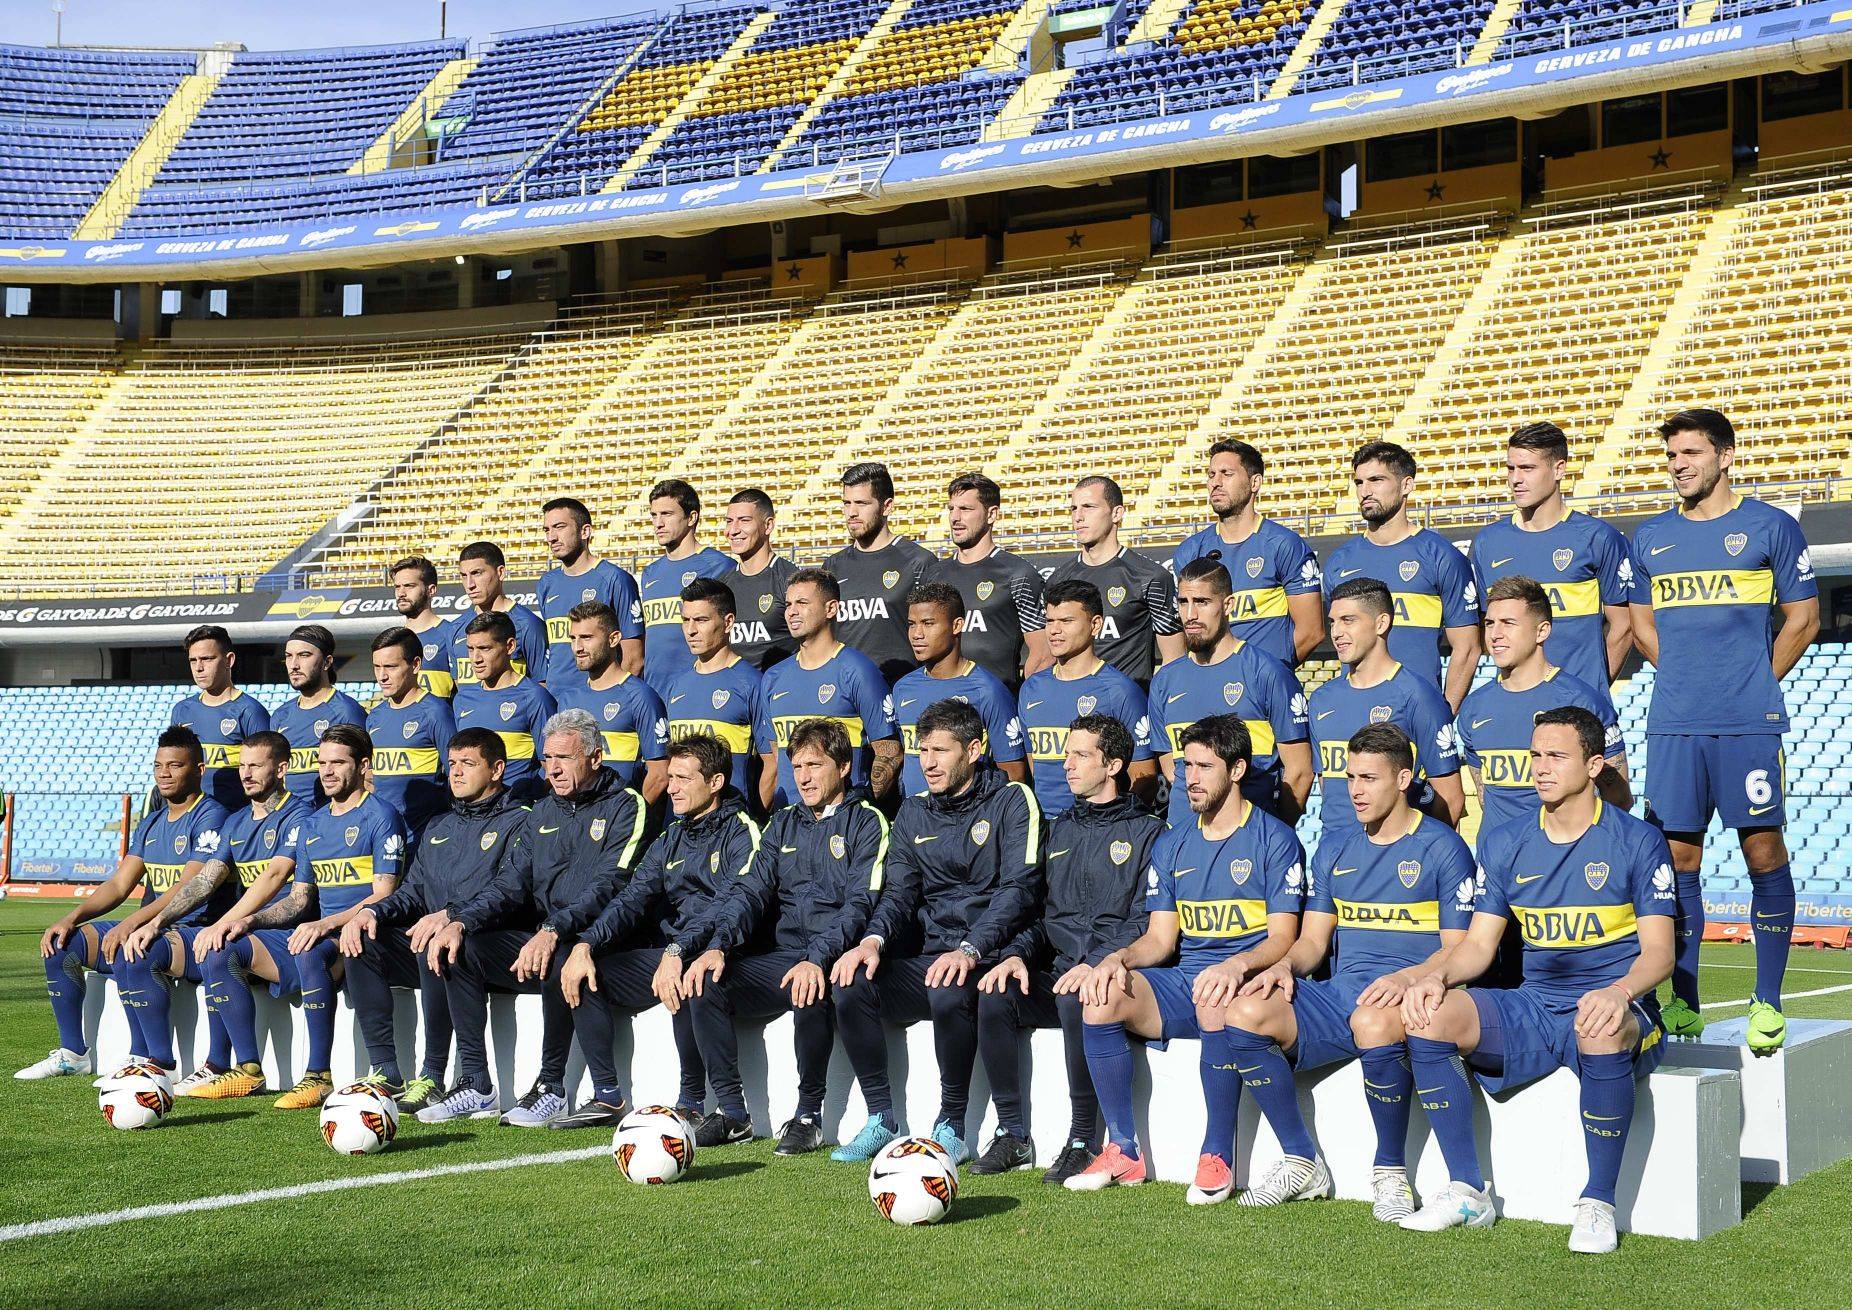 Plantel de Boca Juniors Temporada 2017/18